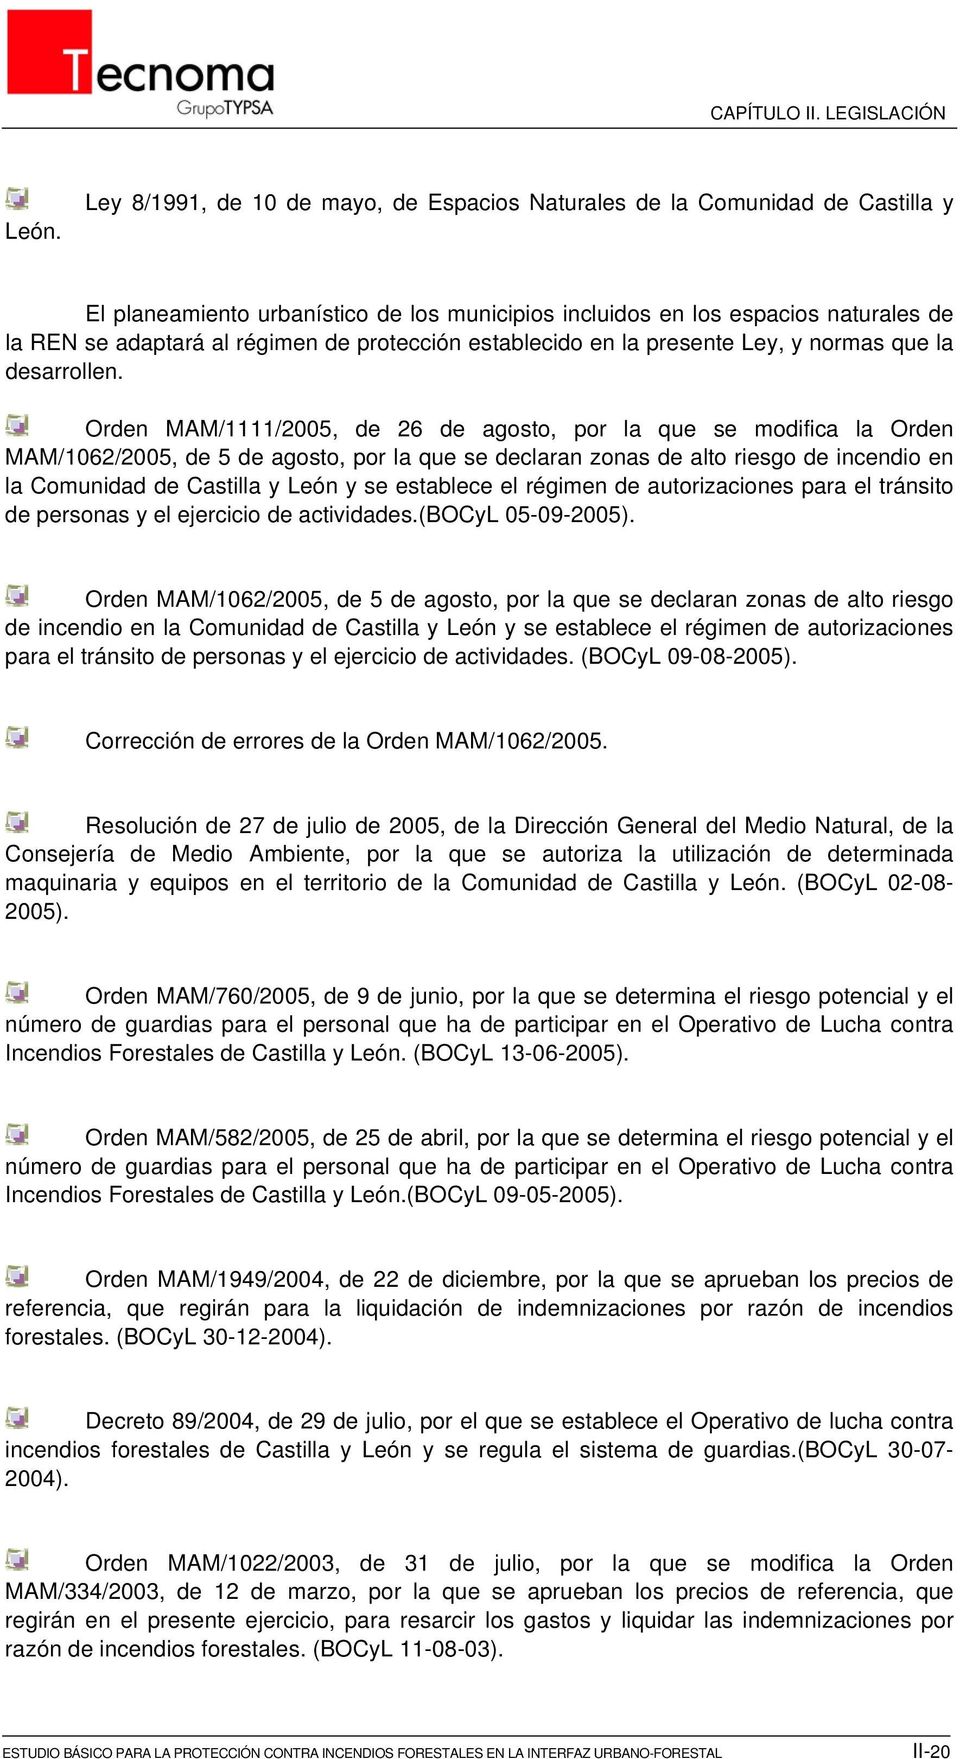 Orden MAM/1111/2005, de 26 de agosto, por la que se modifica la Orden MAM/1062/2005, de 5 de agosto, por la que se declaran zonas de alto riesgo de incendio en la Comunidad de Castilla y León y se